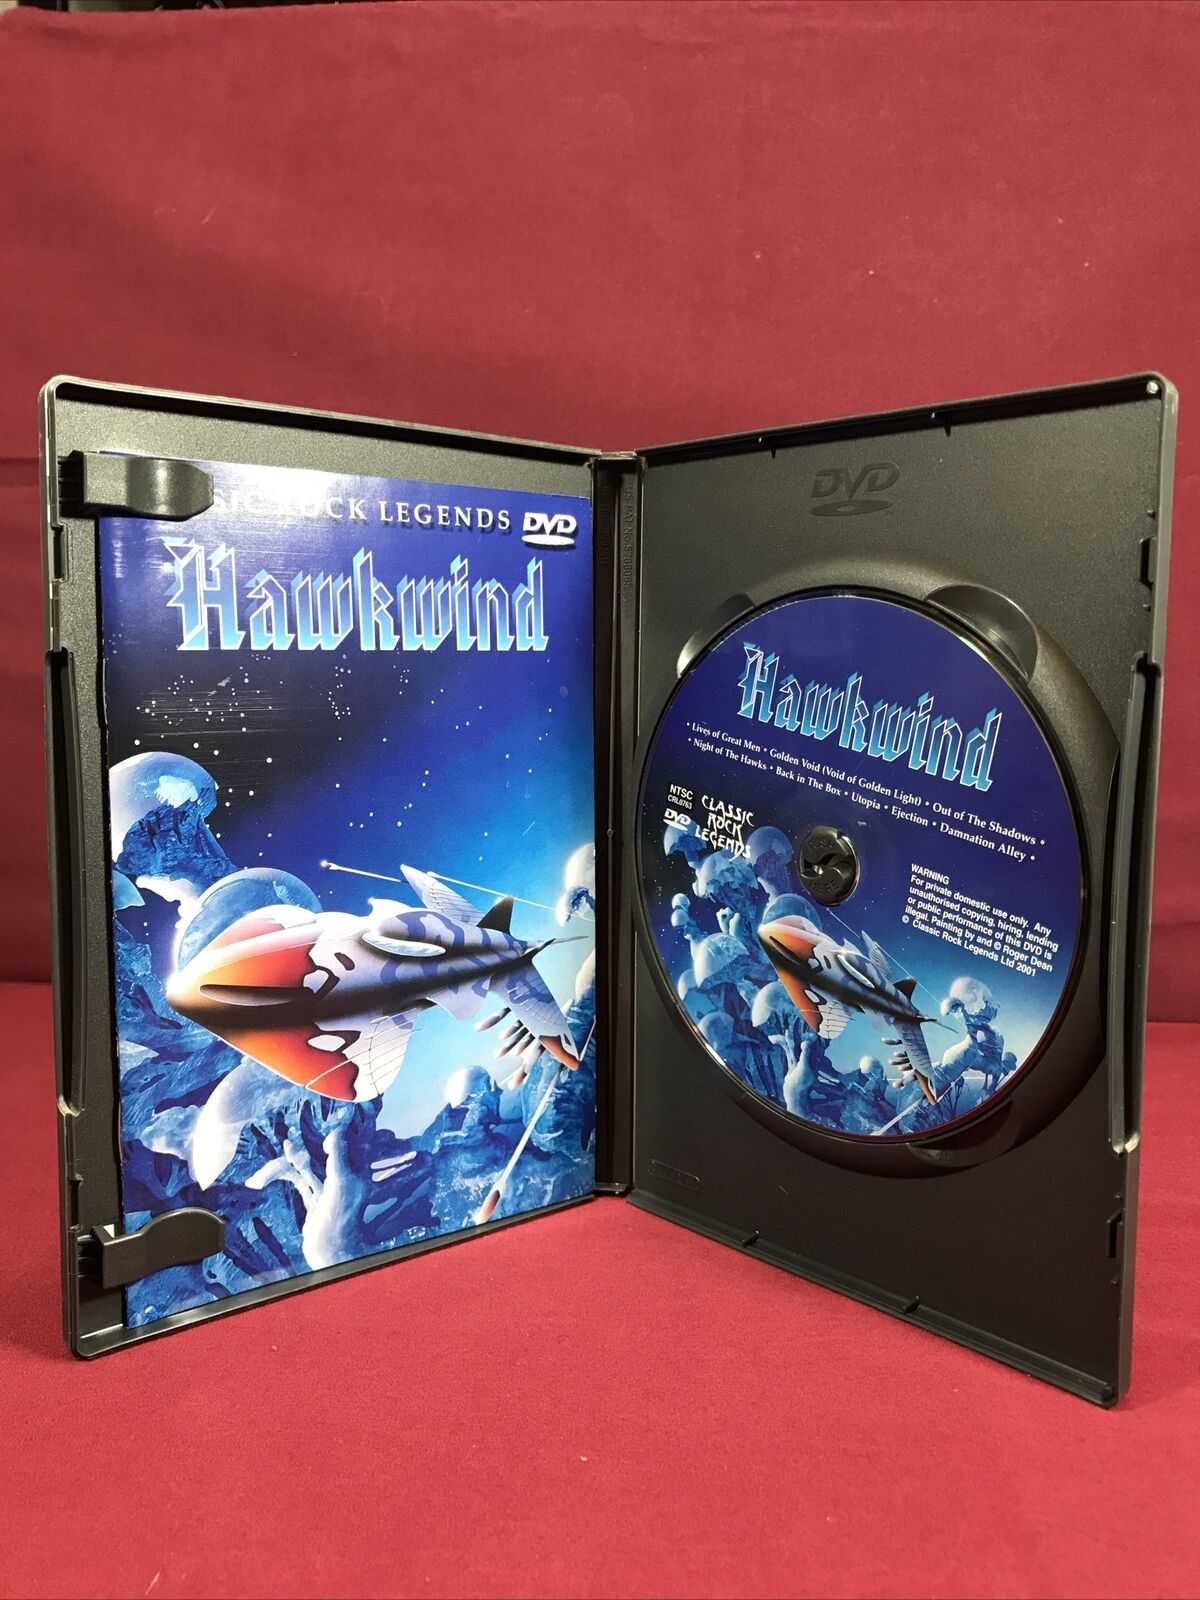 Hawkwind - Classic Rock Legends (DVD, 2002) for sale online | eBay